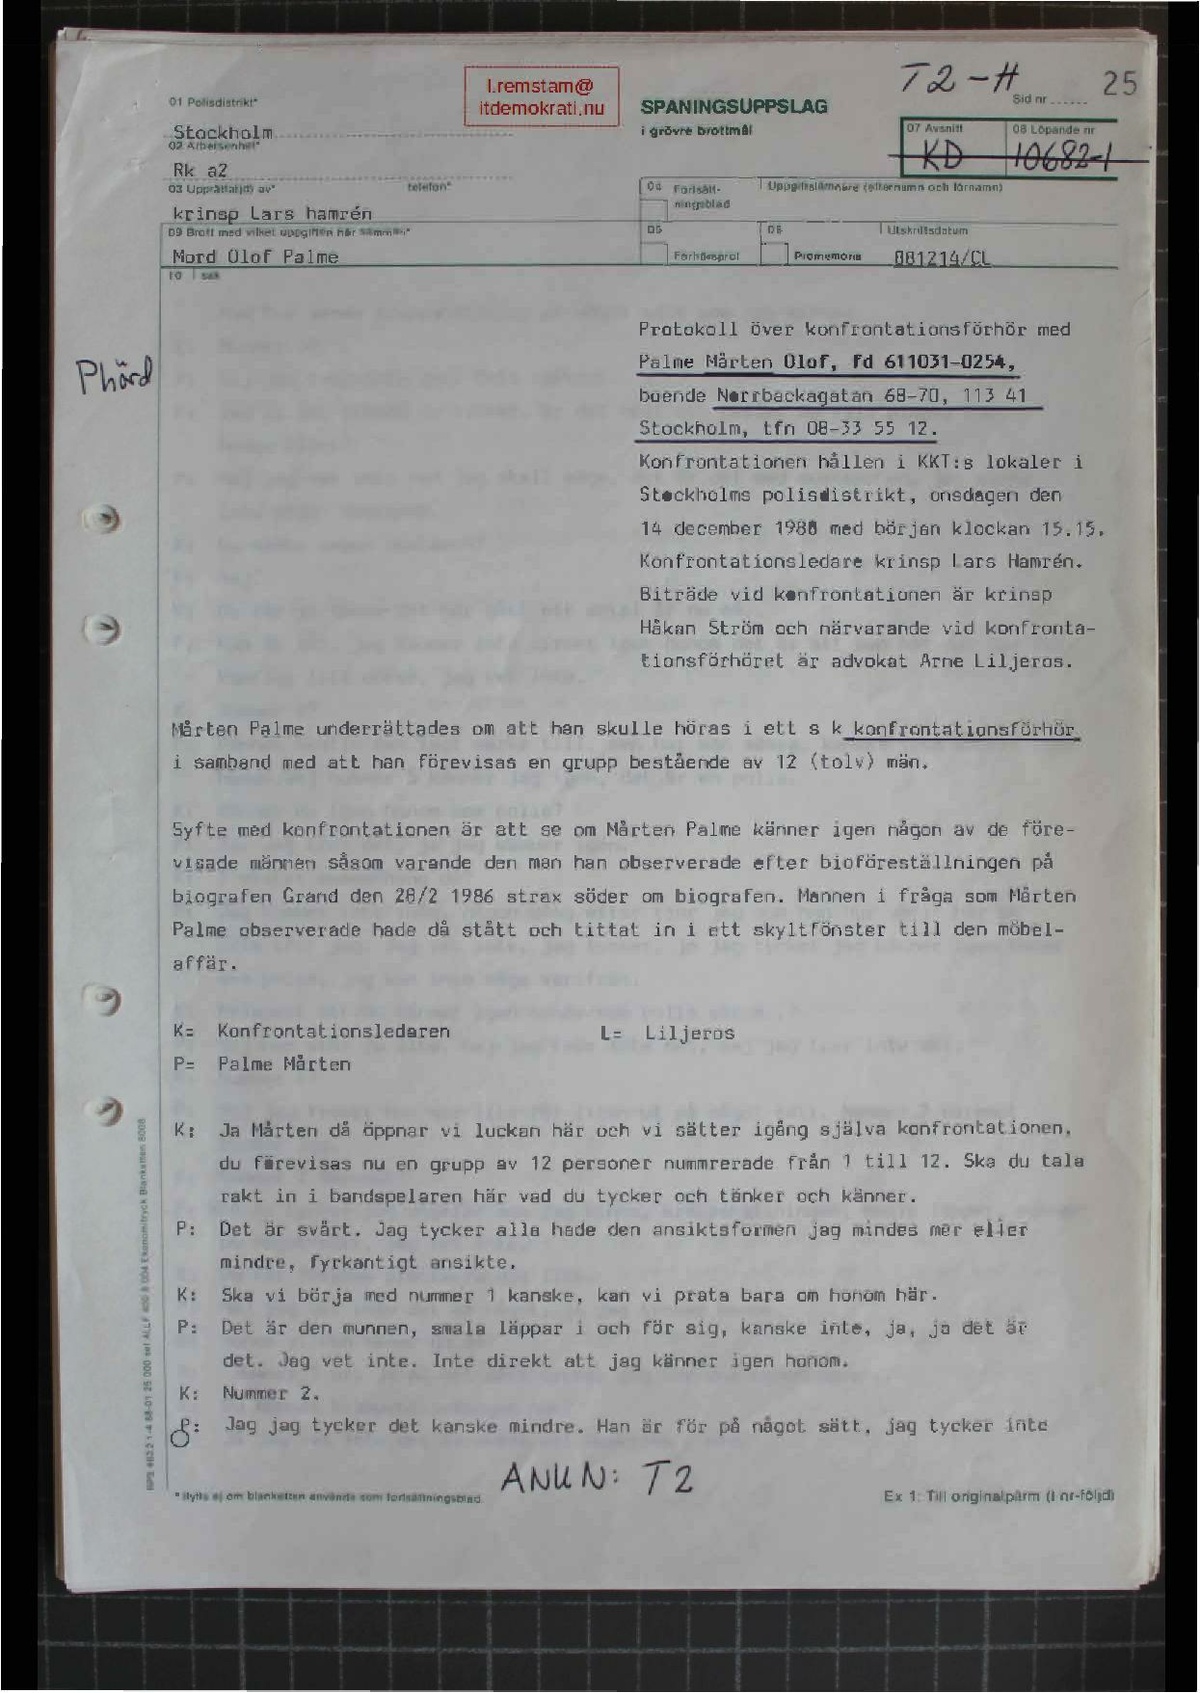 Pol-1988-12-14 1515 T2-00-H Mårten Palme Konfrontation CP.pdf